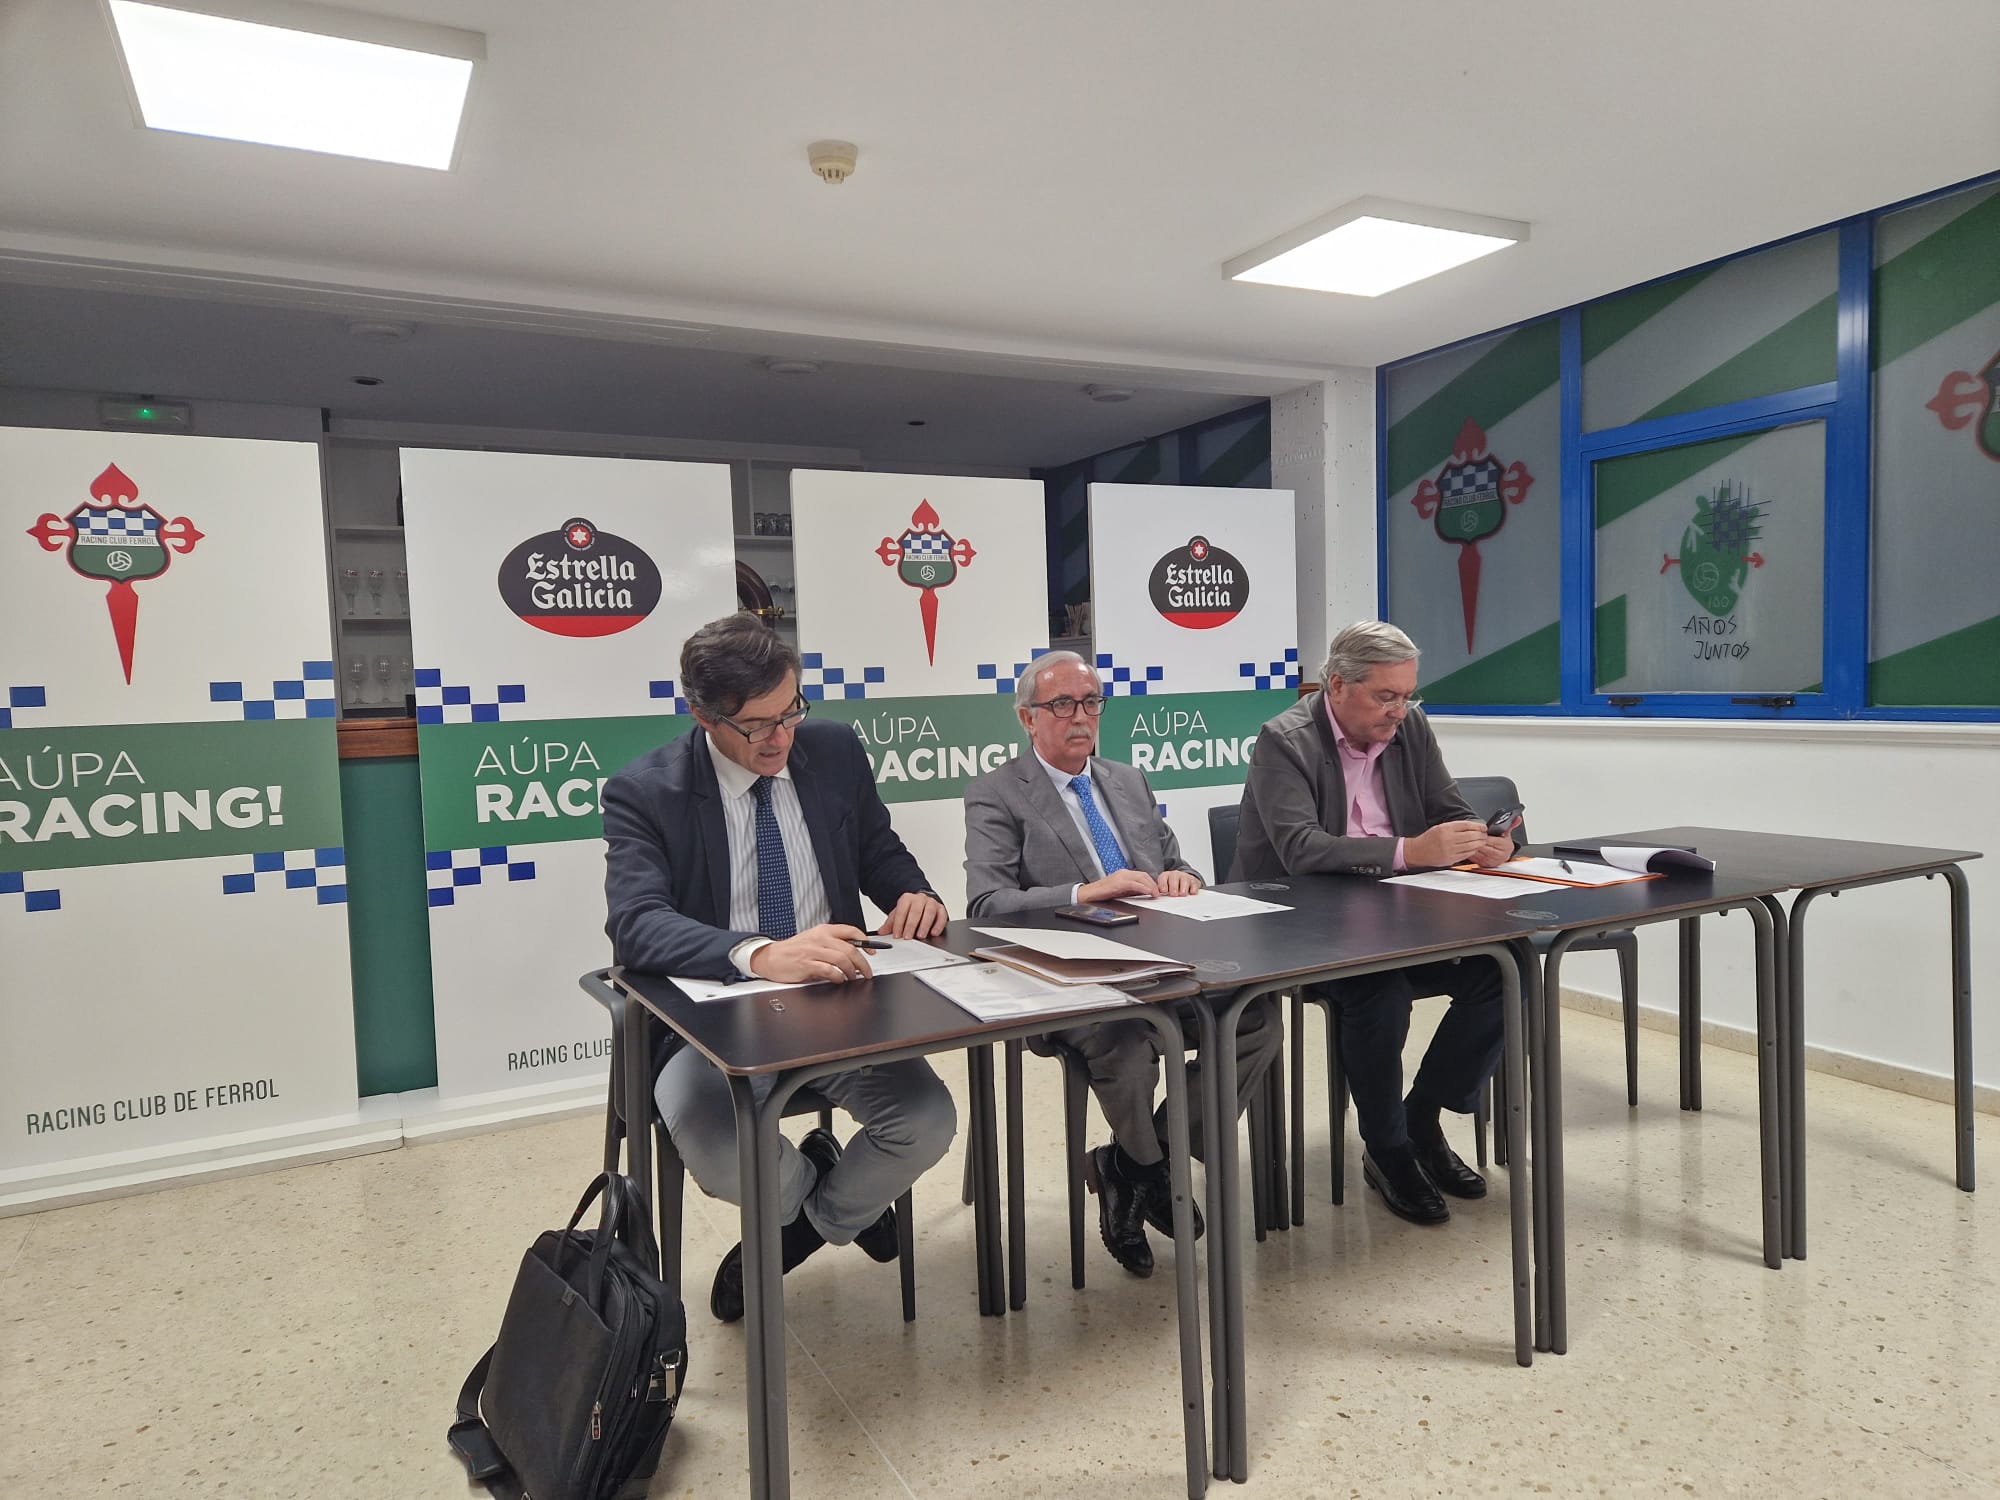 Racing Club de Ferrol :: Plantilla Temporada 2021/2022 